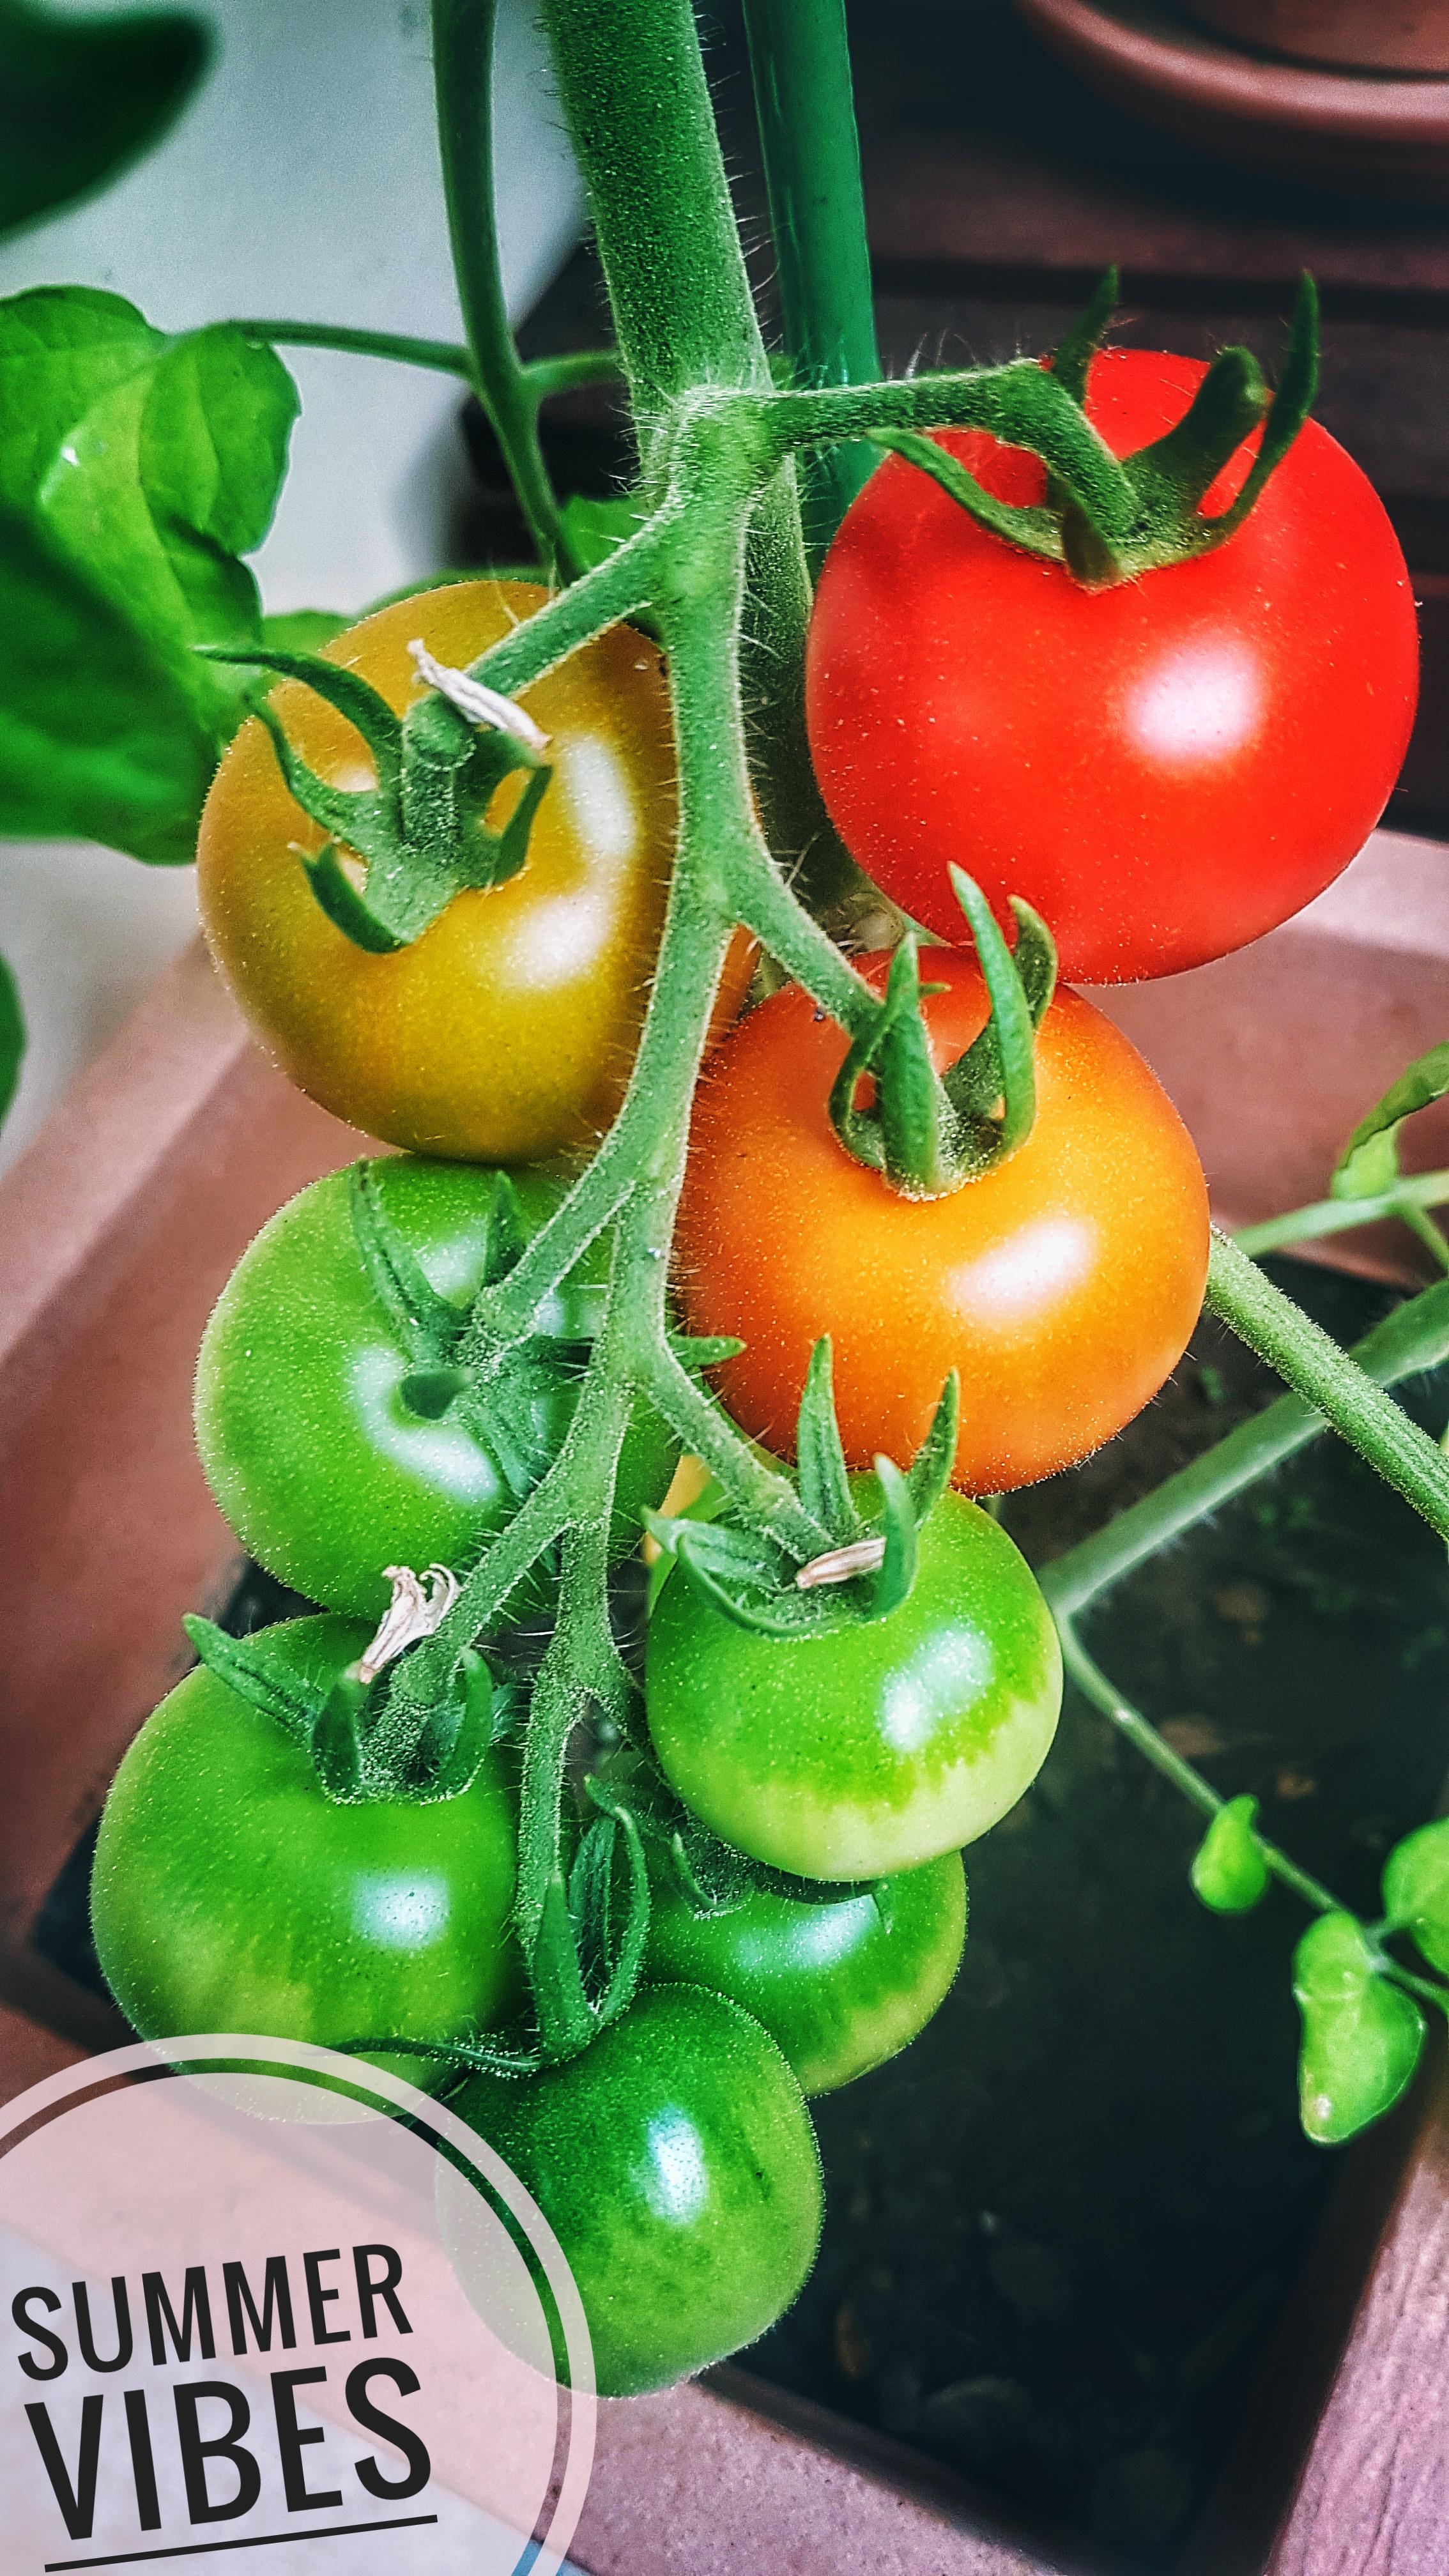 #tomate #summer #eswird #balkonien #urbangardening #lecker #leidergeil #terrassenpflanze